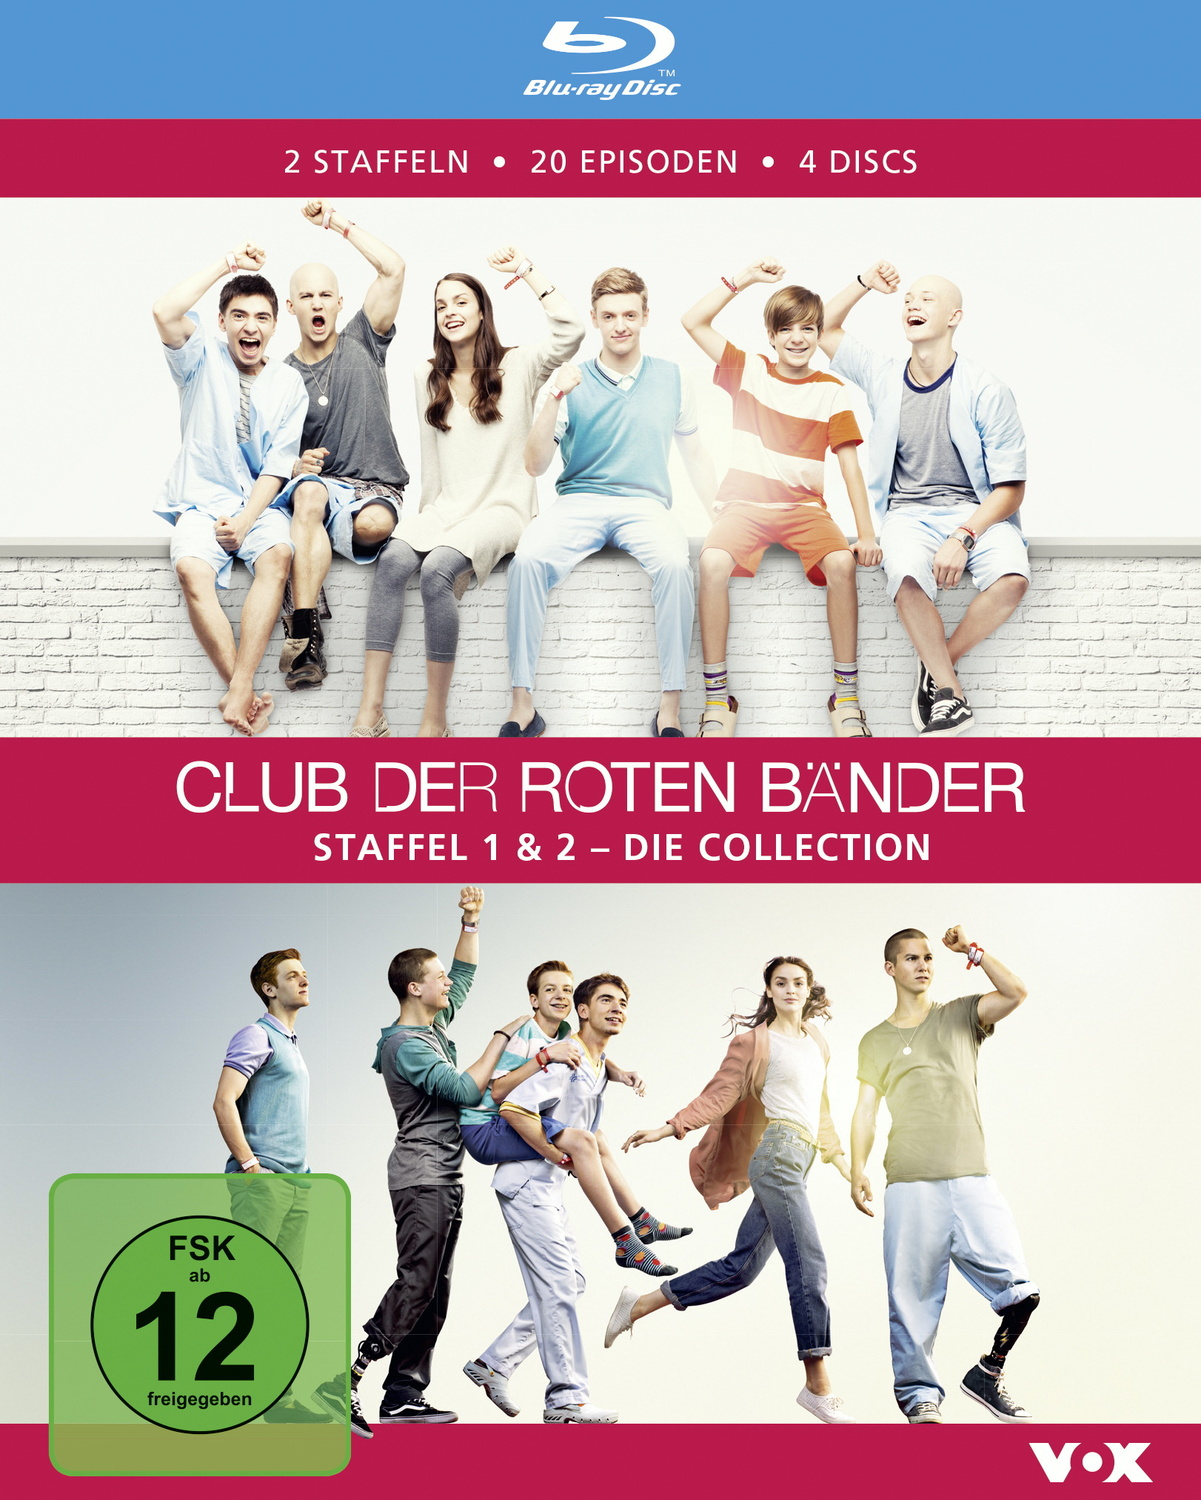 Bänder, Club 2 1 der Discs) & Blu-ray Collection roten Die (4 Staffel -